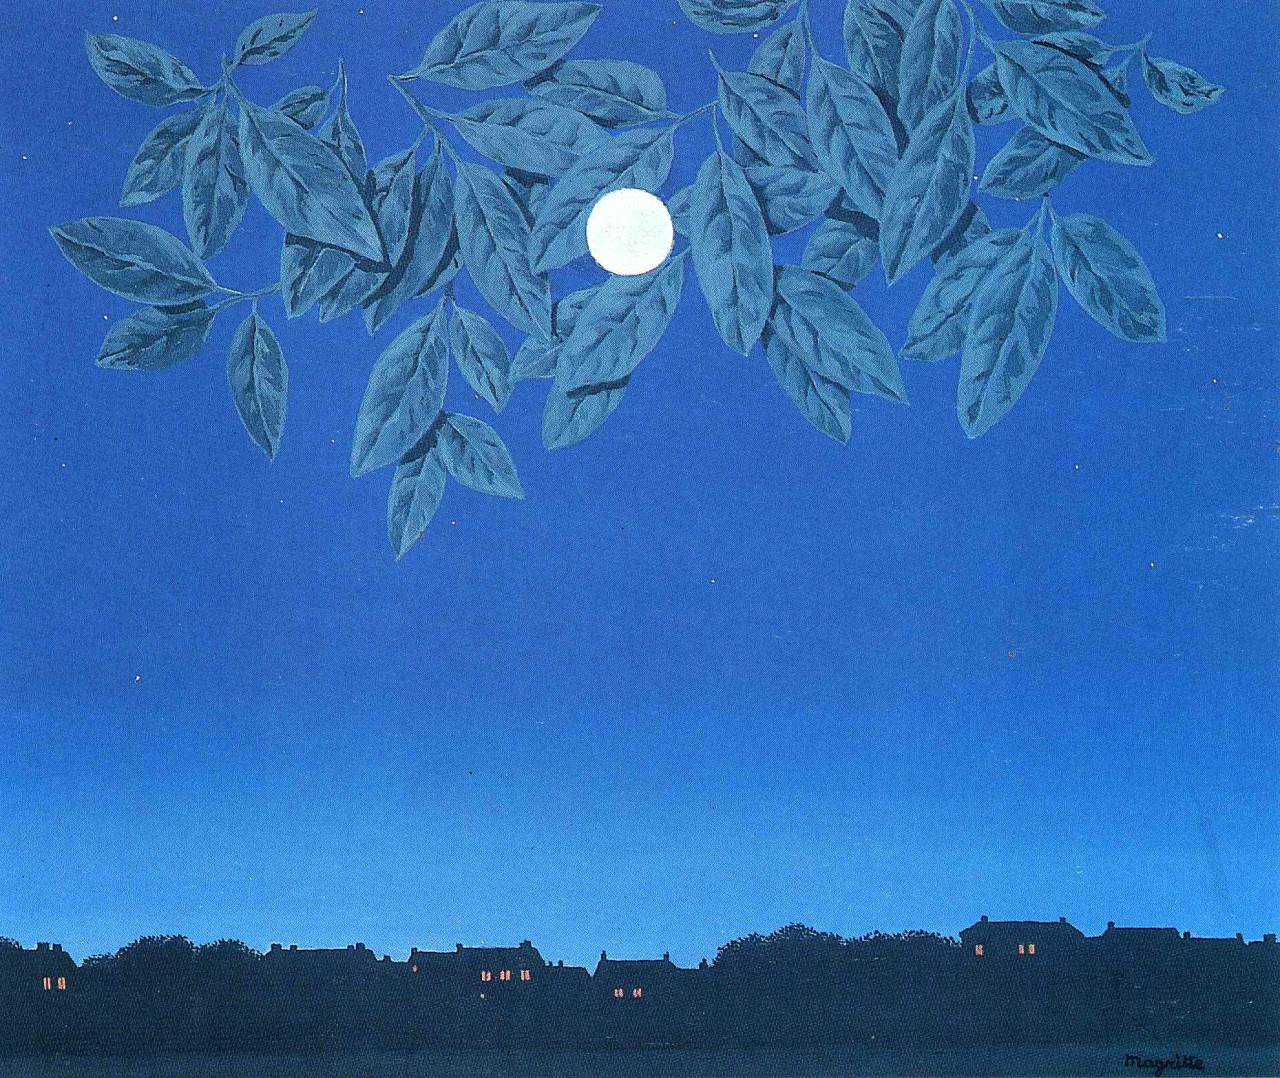 Tác phẩm Trang trống (The blank page) của Rene Magritte năm 1967.